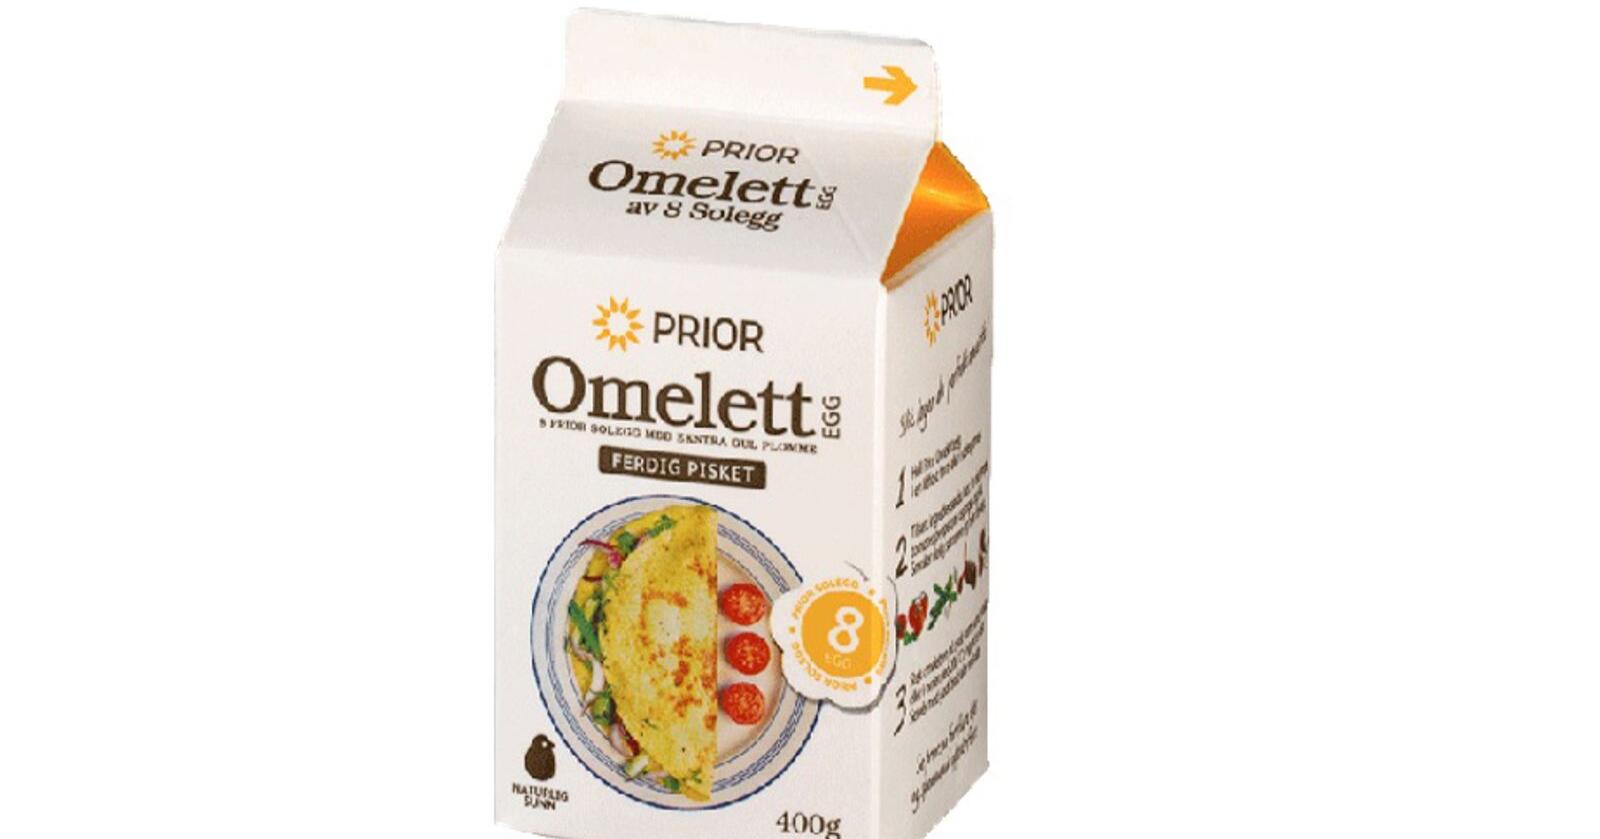 Husker du dette produktet fra Prior? Eggene på kartong var ferdig pisket og gjorde det enkelt å lage omelett. Foto: Nortura 